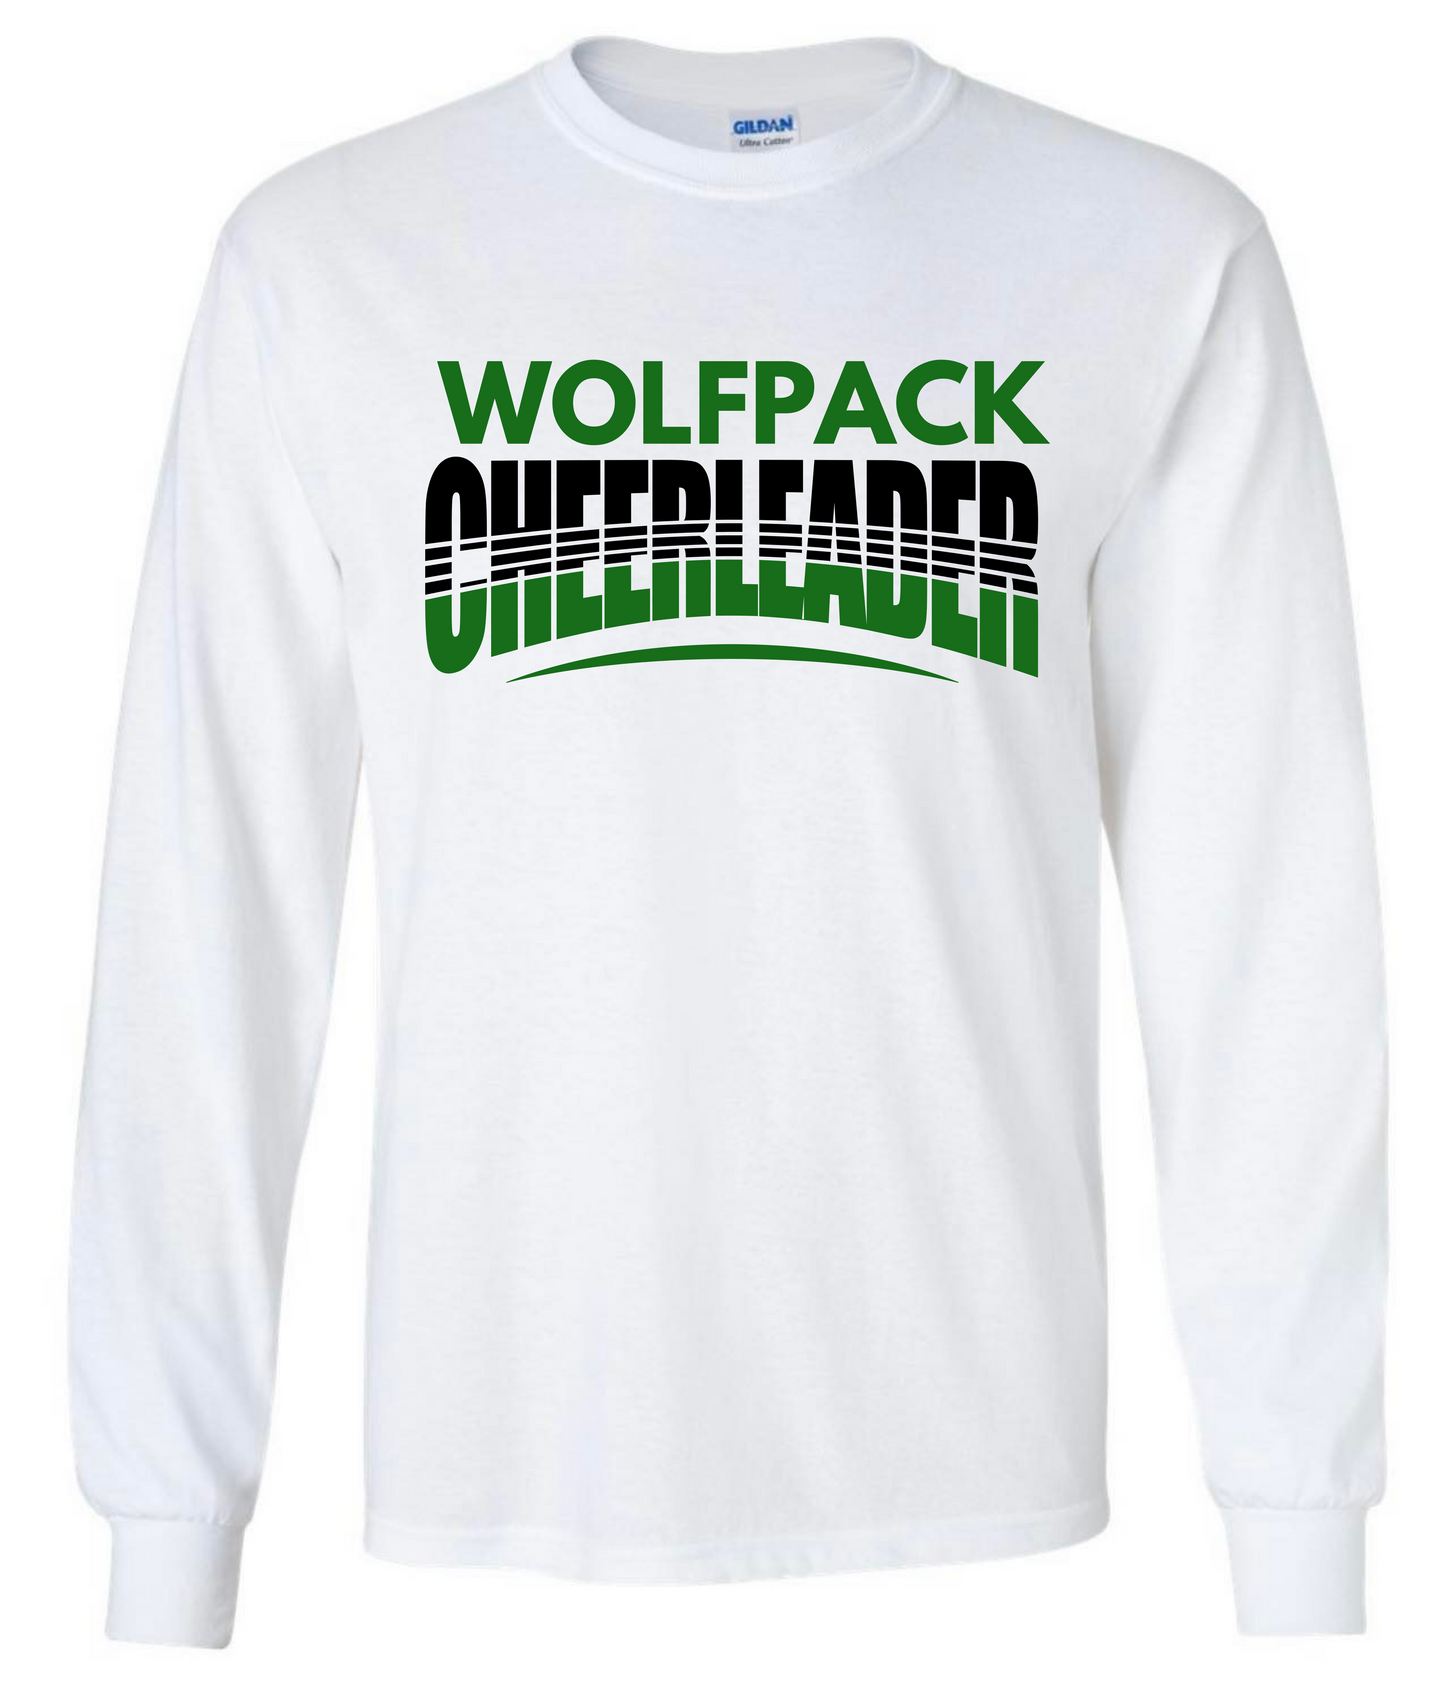 Wolfpack Cheerleader Longsleeve Tshirt